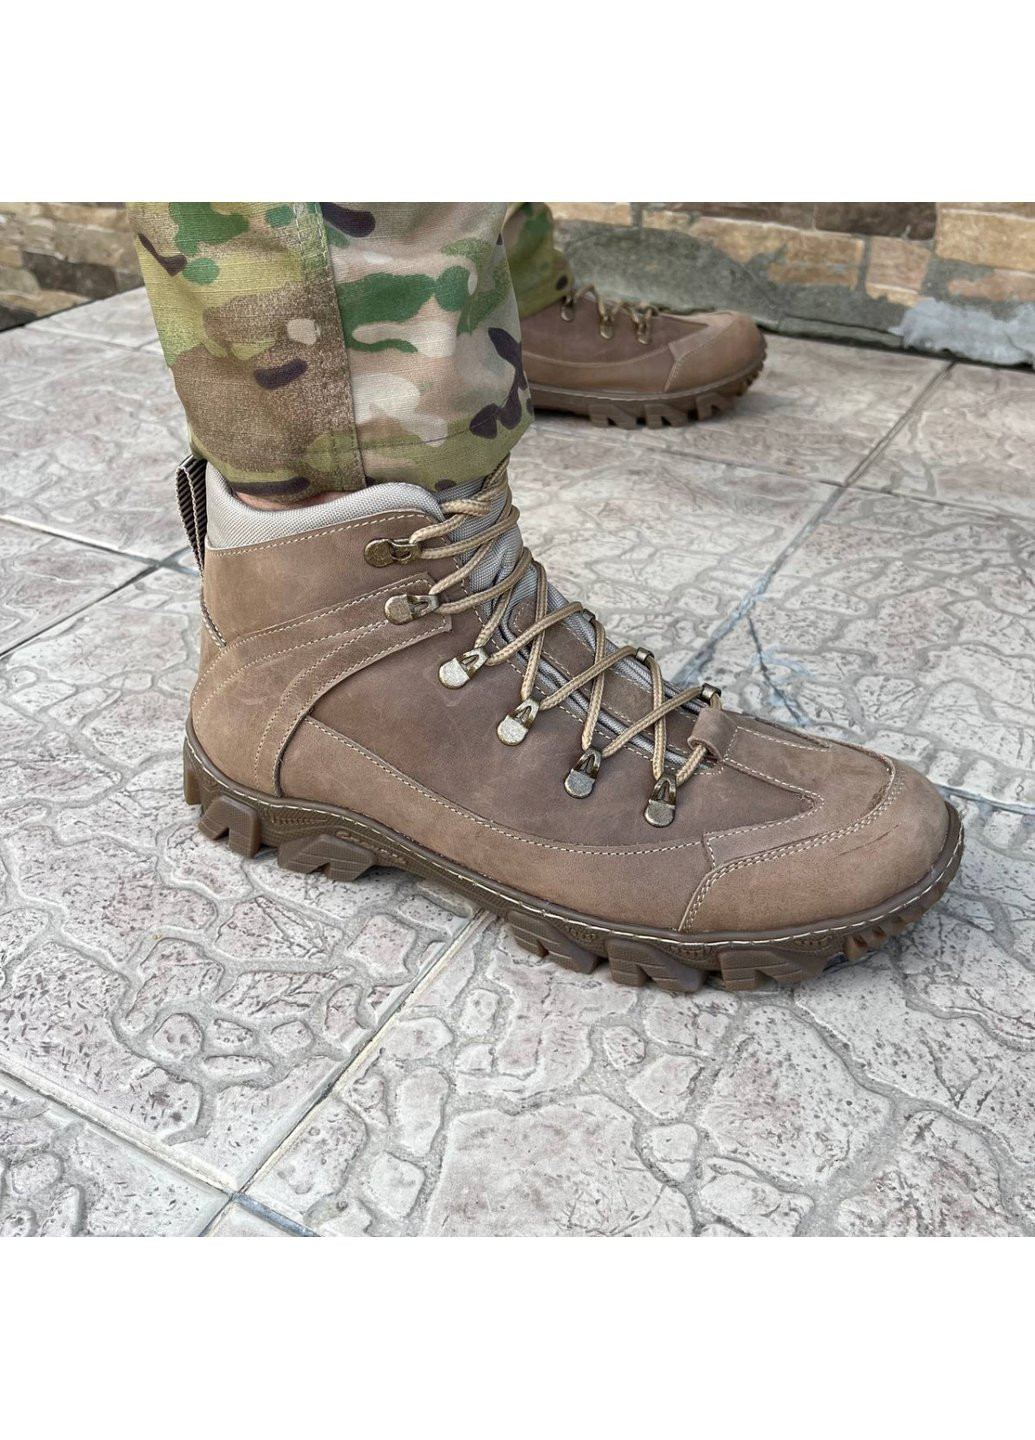 Коричневые осенние ботинки военные тактические всу (зсу) 7521 42 р 28 см коричневые Power